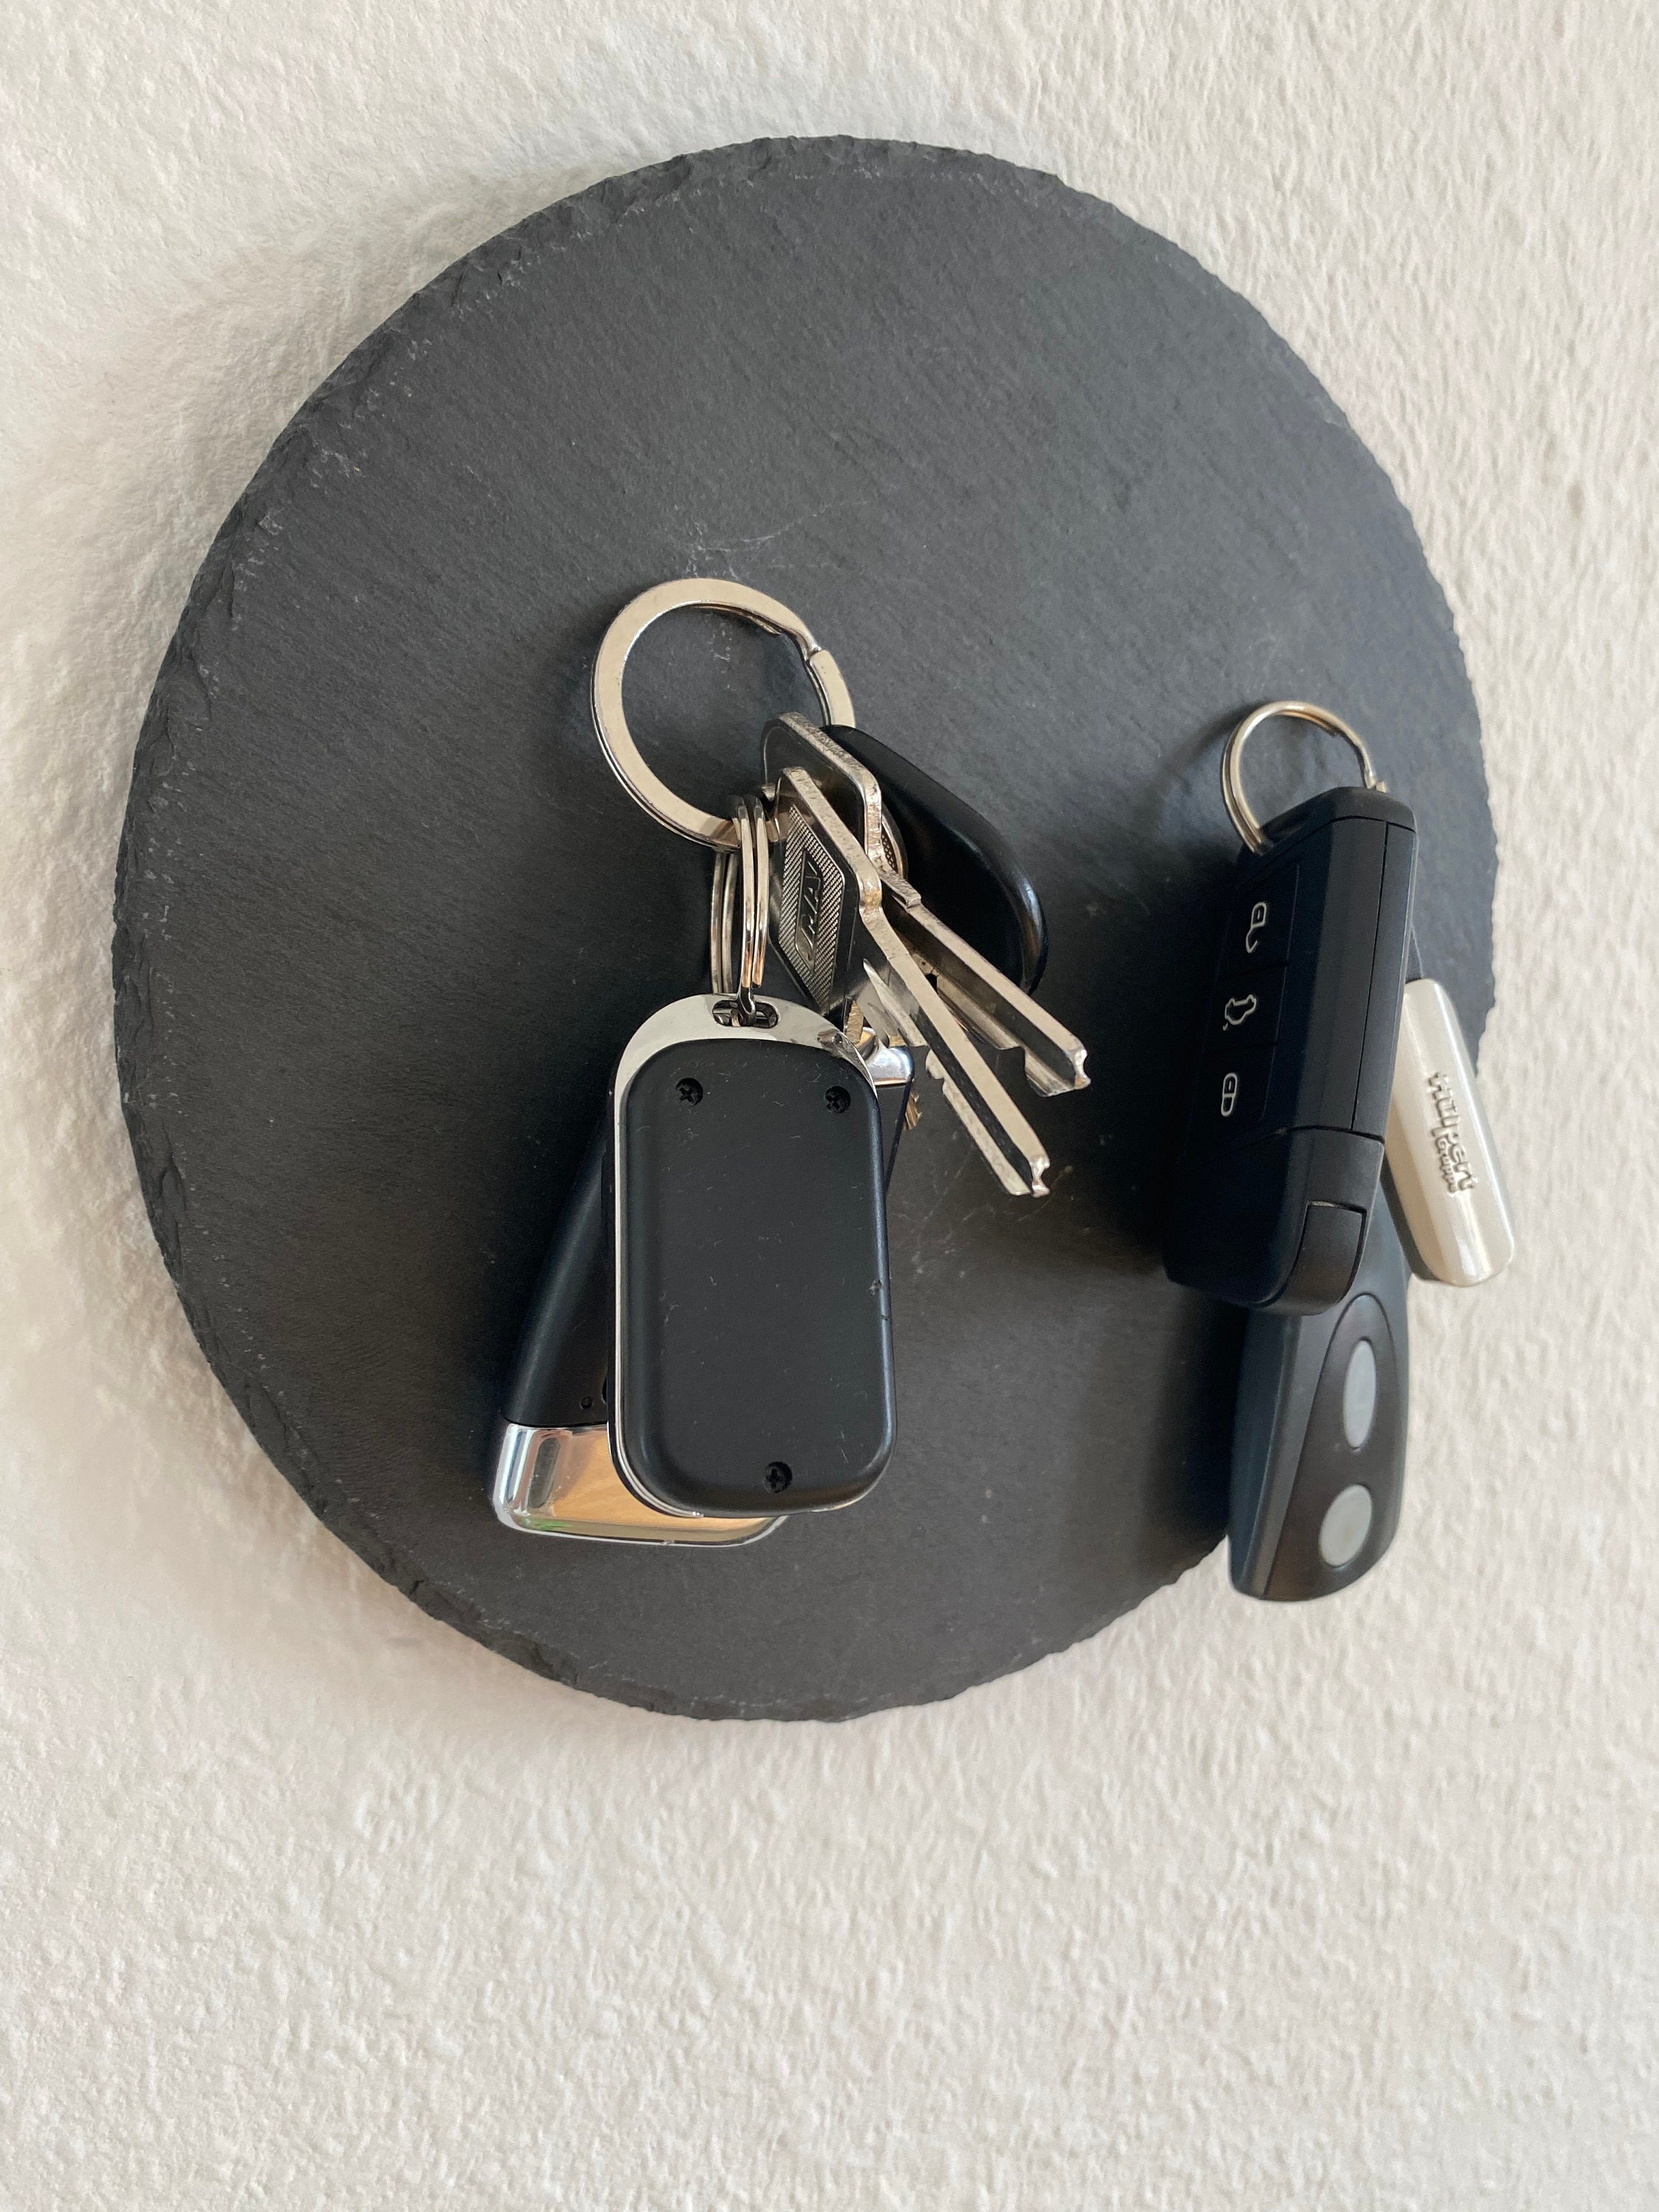 Schlüsselhalter Mit Schlüssel an Der Wand Stockbild - Bild von